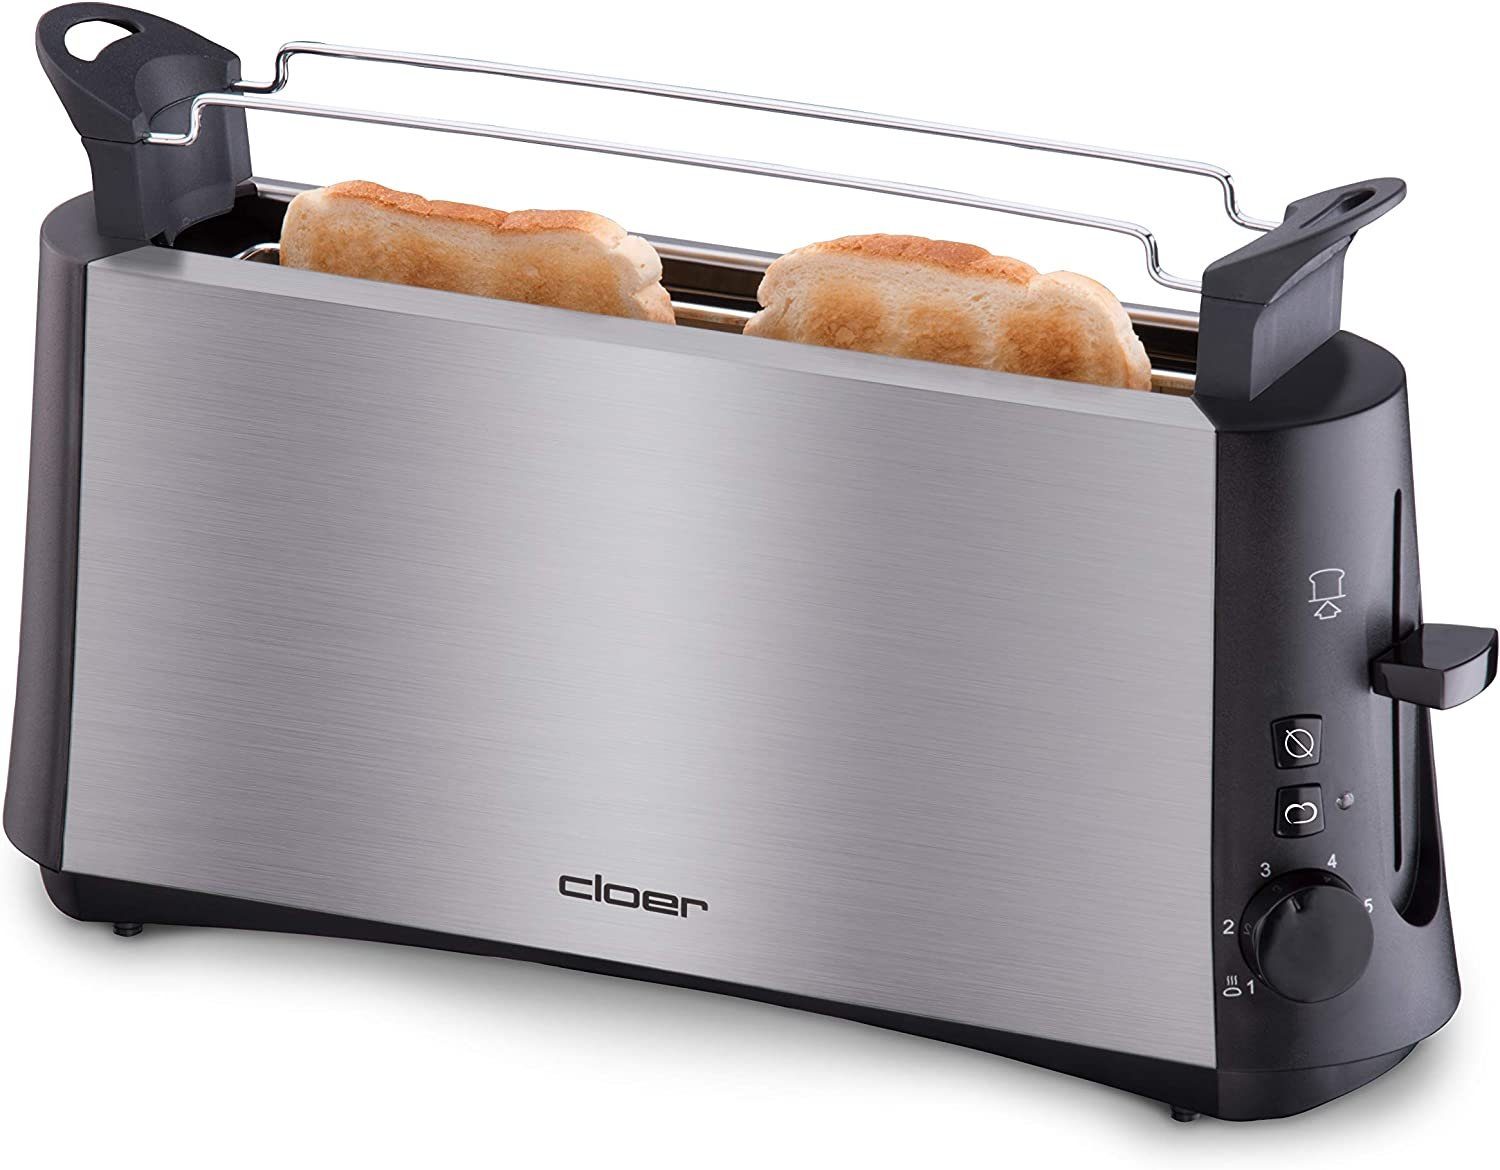 W Langschlitztoaster, Toaster Cloer 880 3810